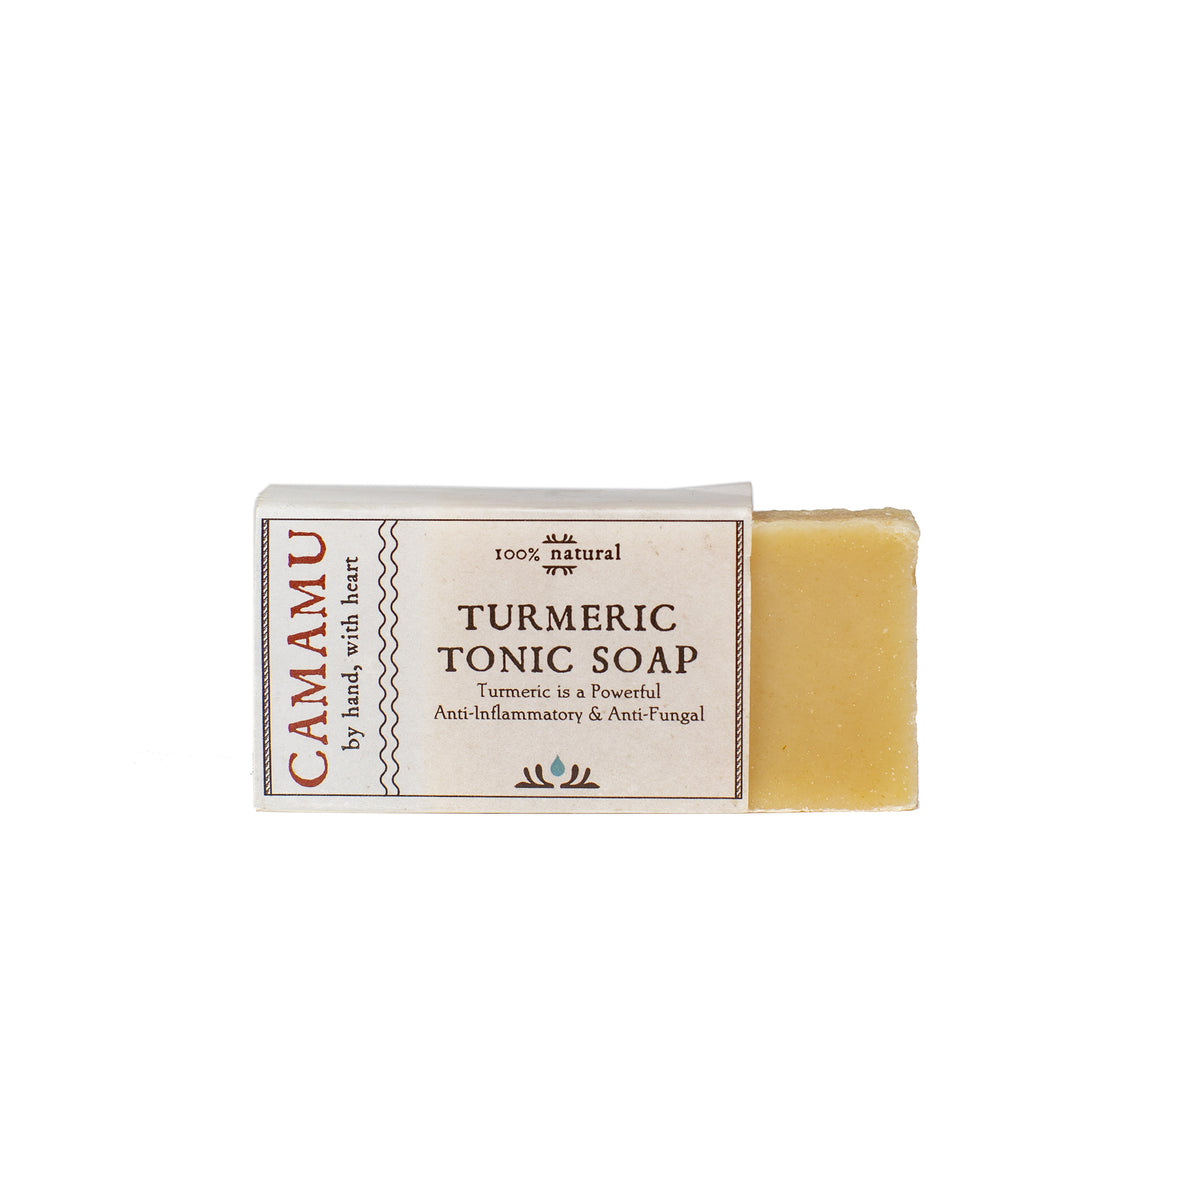 Turmeric Tonic Soap Bar